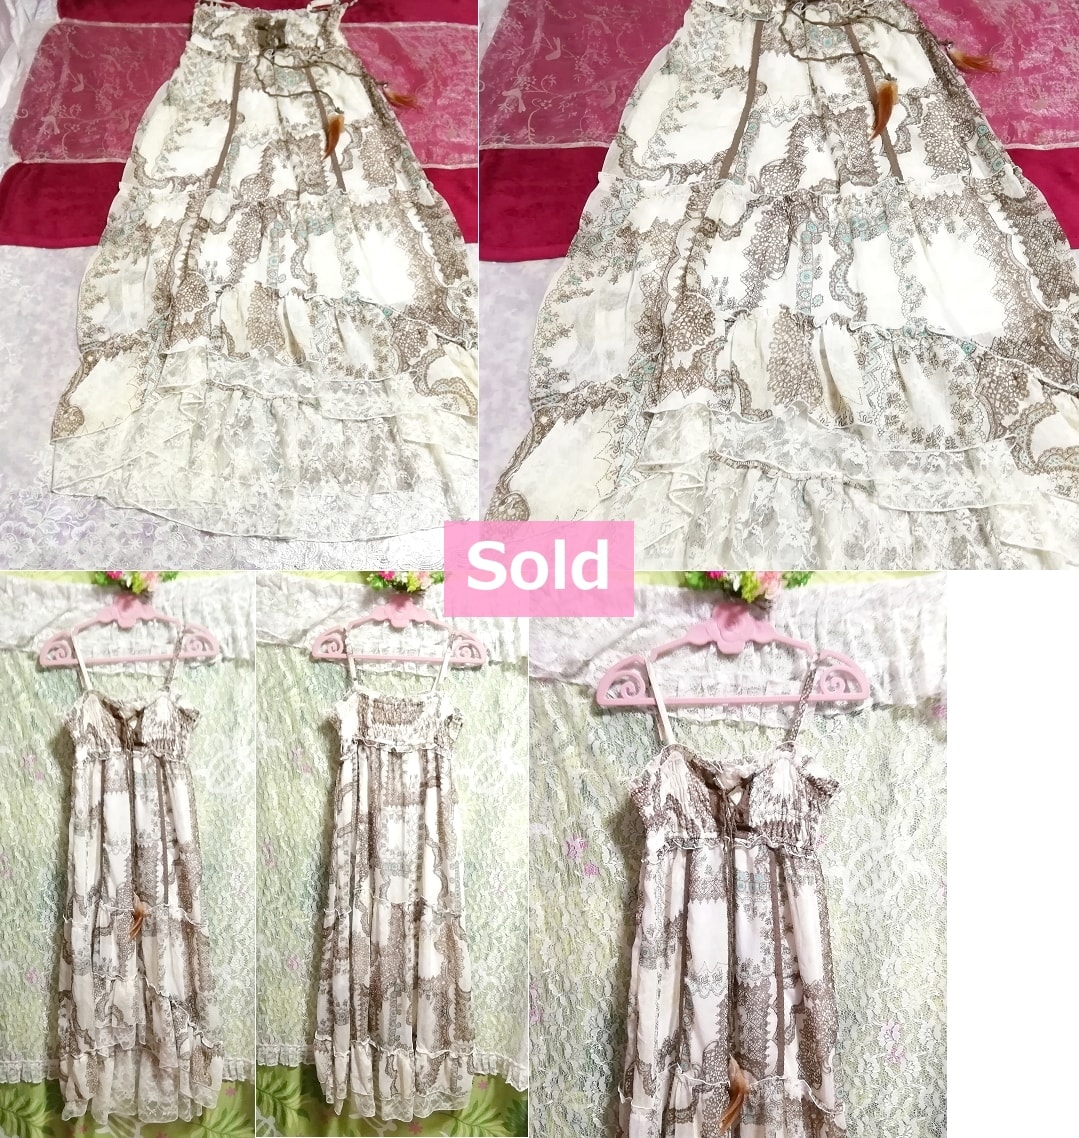 茶水色エスニック柄シフォンレースキャミソールマキシワンピース Brown white ethnic pattern chiffon lace camisole maxi skirt onepiece, ワンピース&ロングスカート&Lサイズ